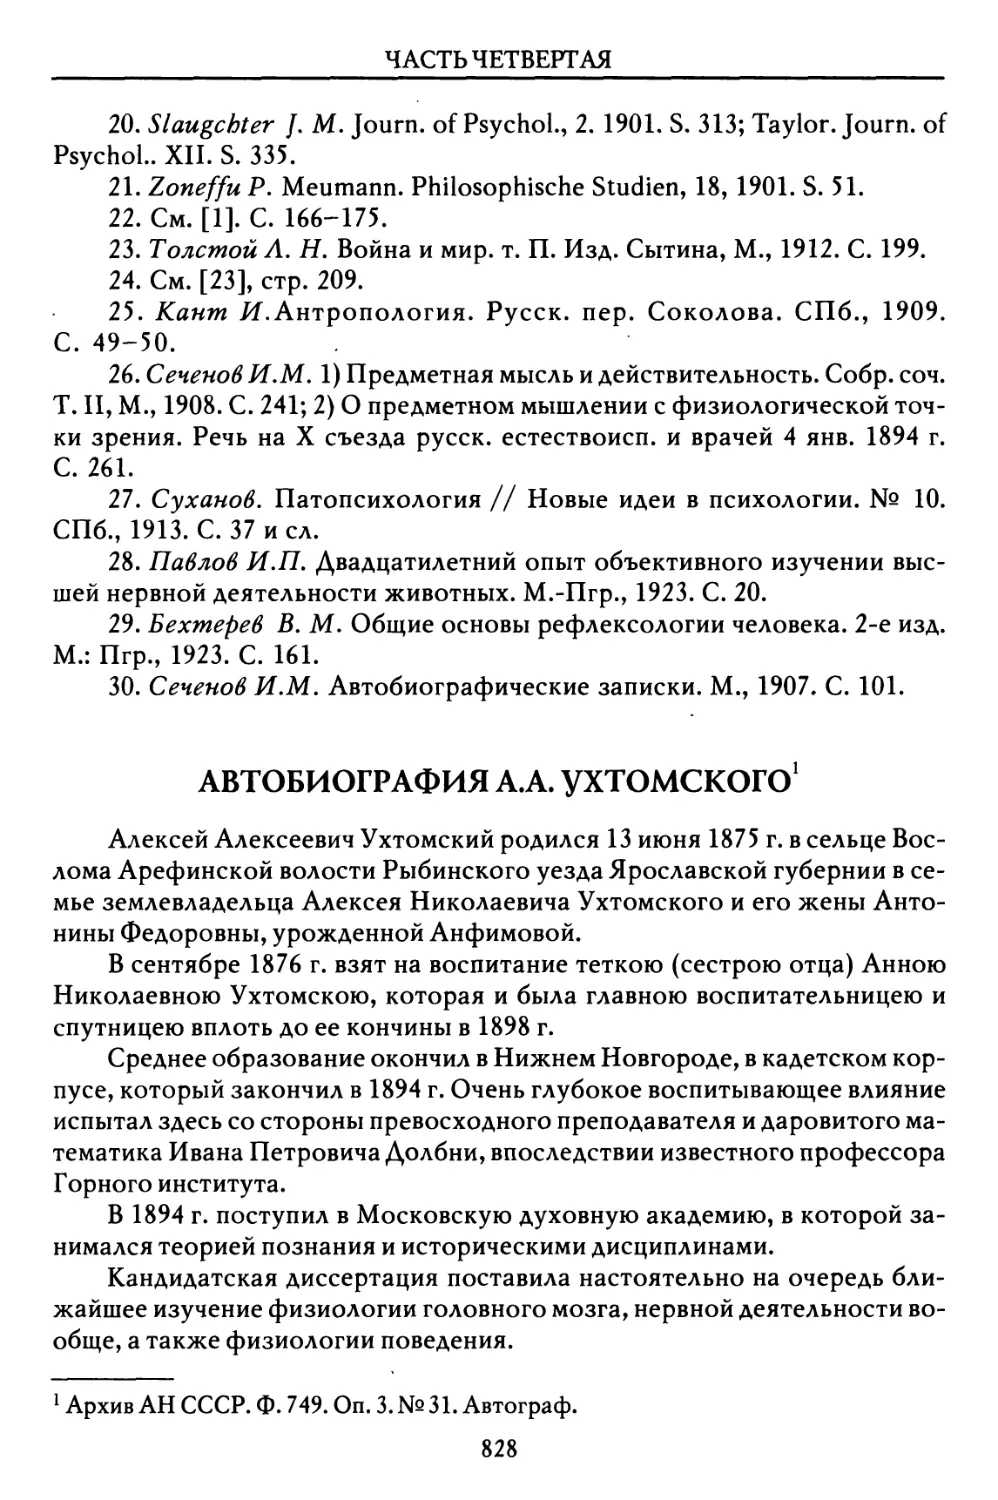 Автобиография A.A. Ухтомского